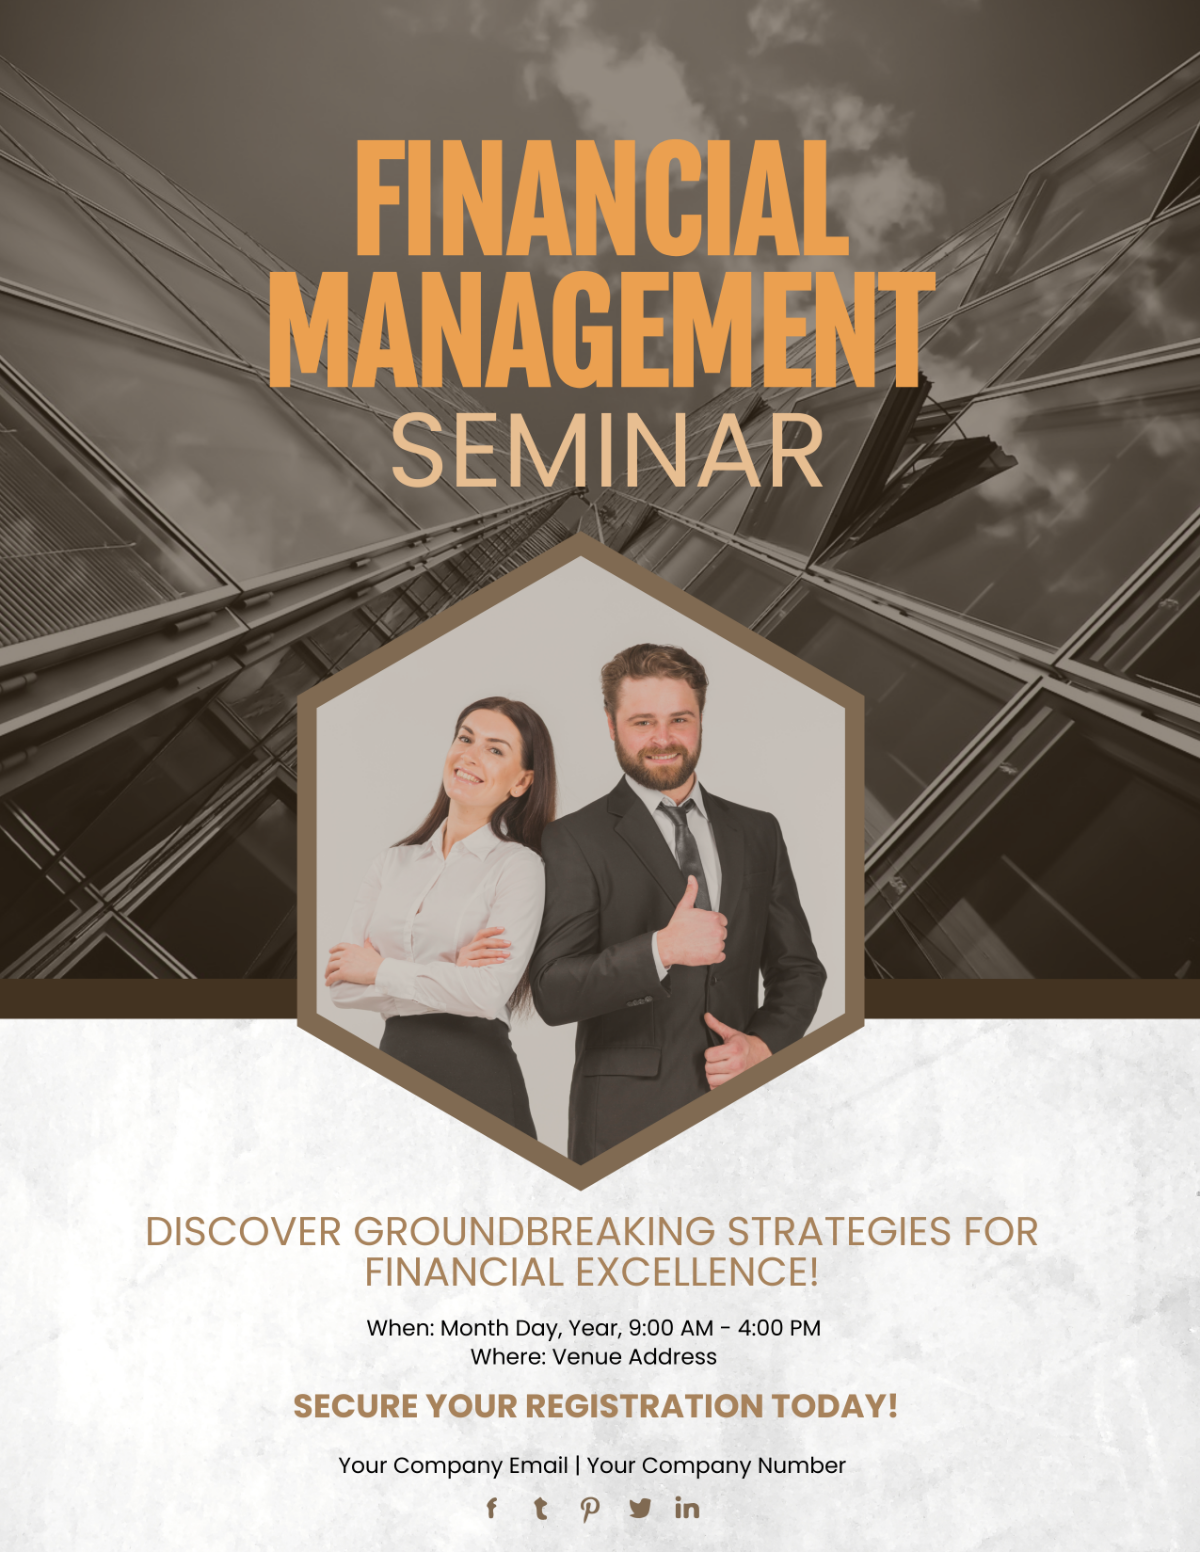 Financial Management Seminar Flyer Template